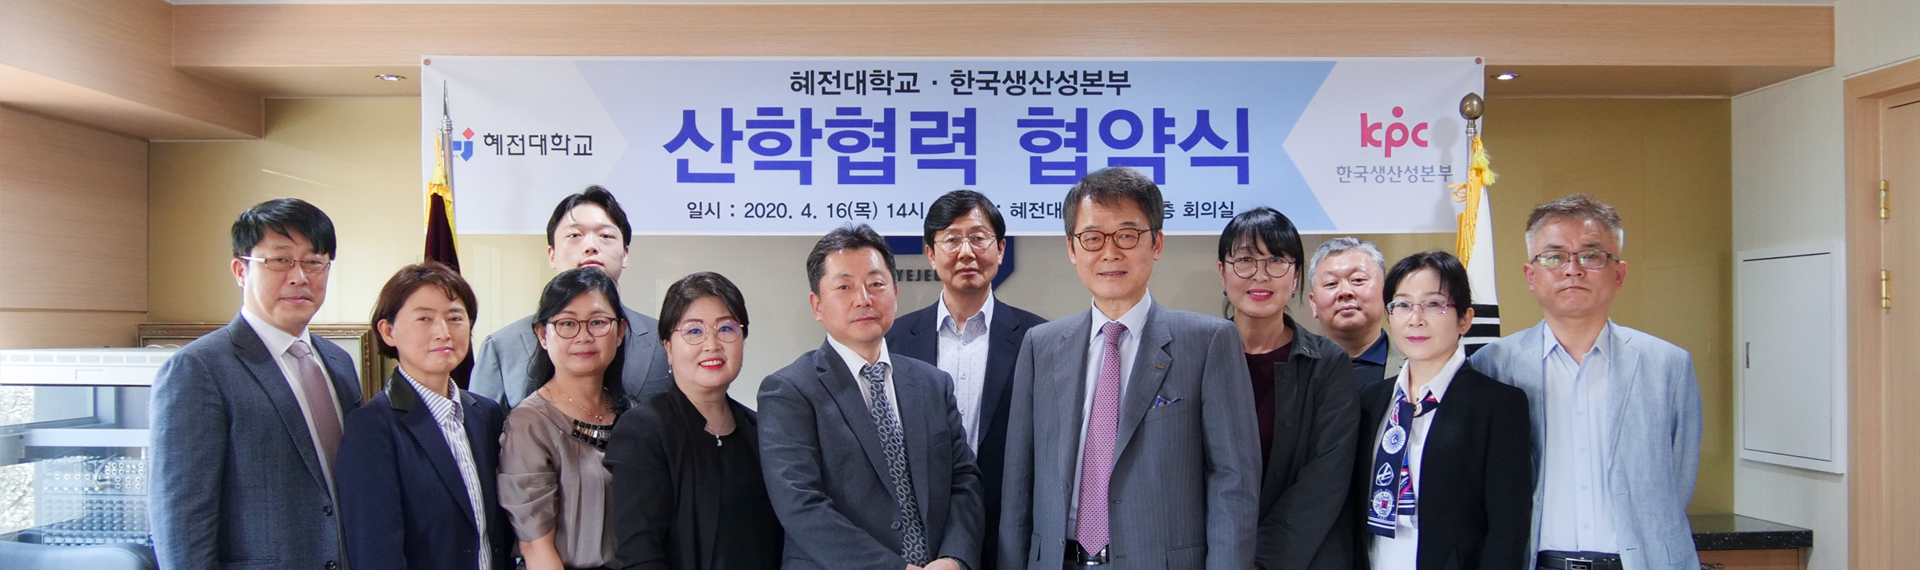 한국생산성본부(KPC) 산학협력체결 2020년 4월 16일